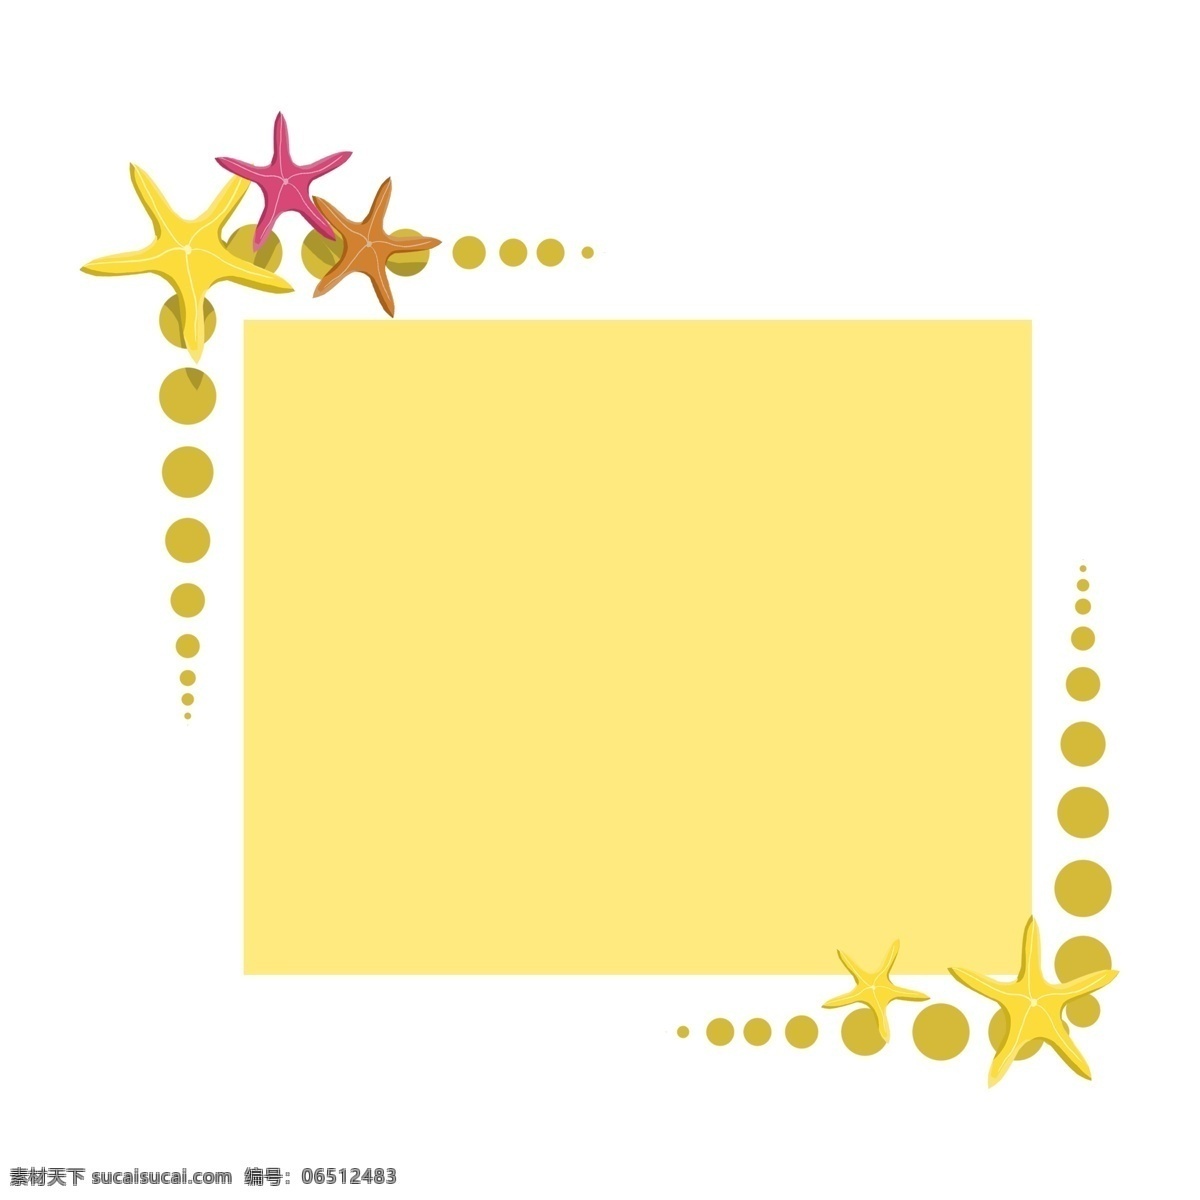 黄色可爱边框 黄色的 海星 手绘